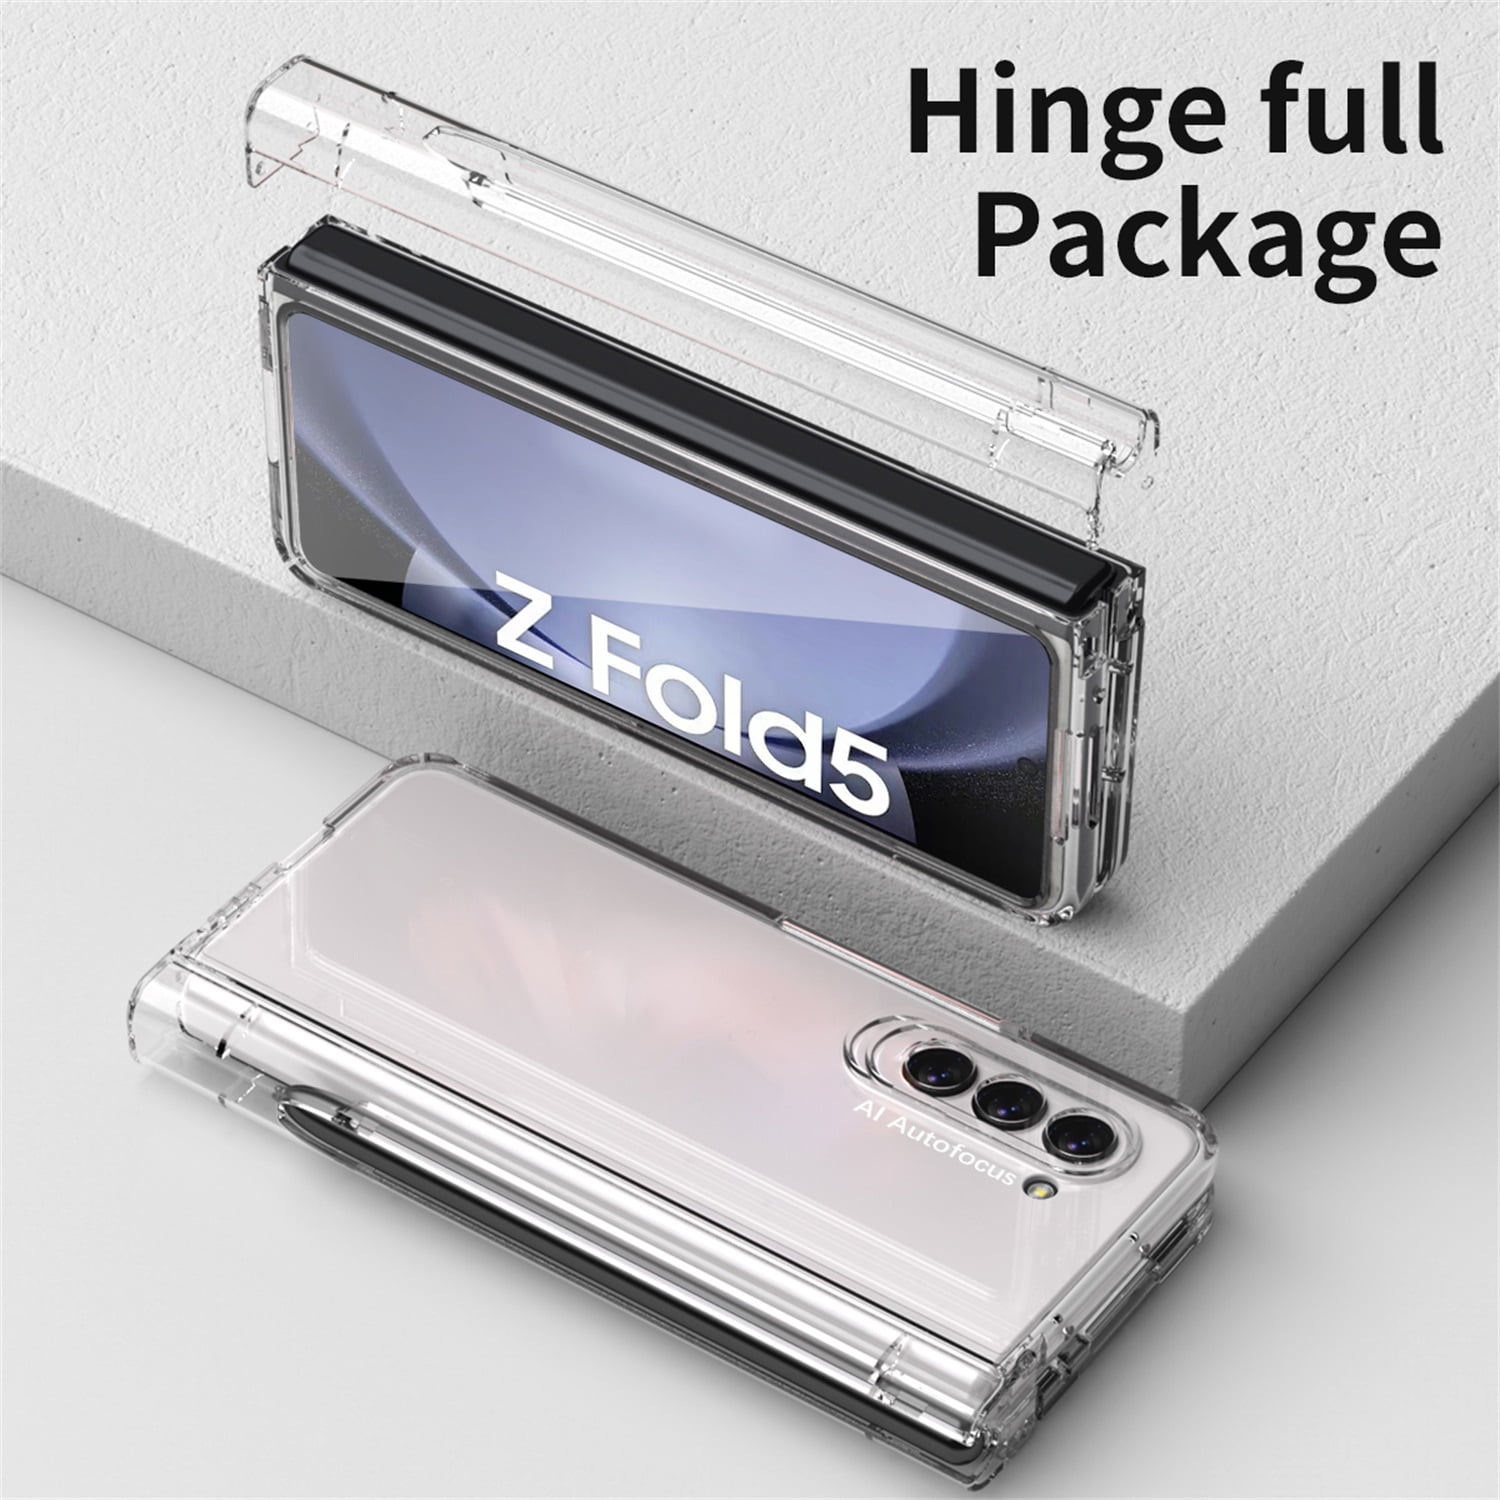 Funda Galaxy Z Fold 5 con S Pen y ranura para S Pen, protector de pantalla  incorporado y soporte para Samsung Galaxy Z Fold 5 Case